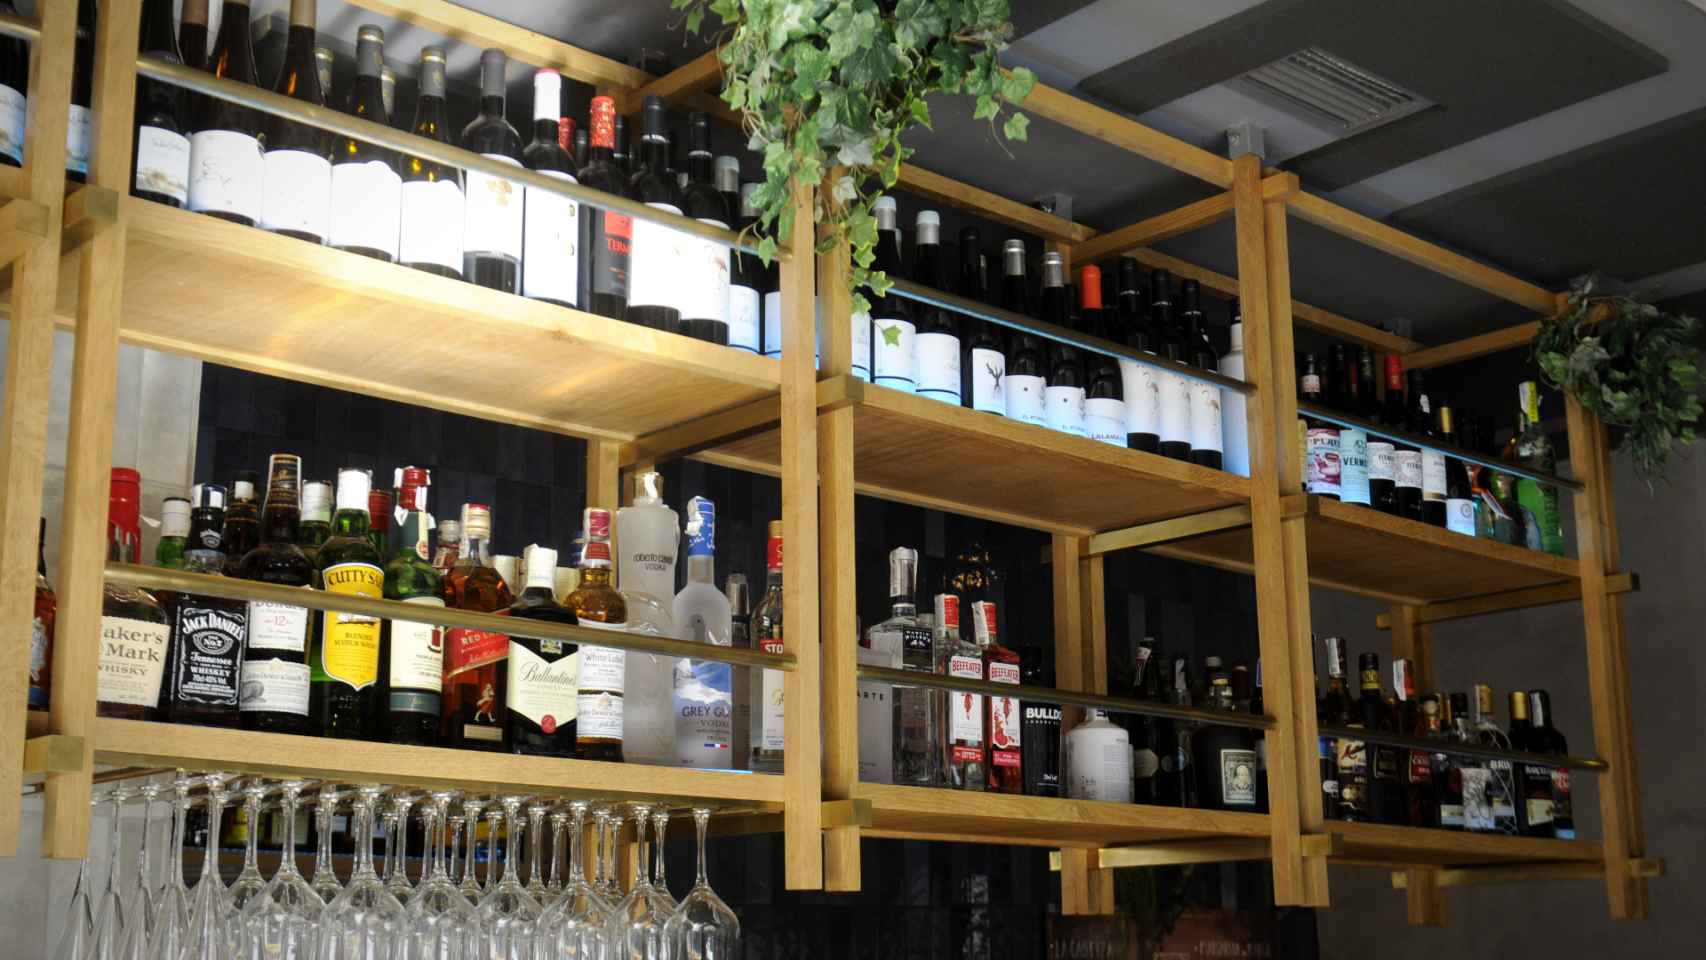 El muestrario de licores del bar Santerra, donde empiezan a faltar botellas.